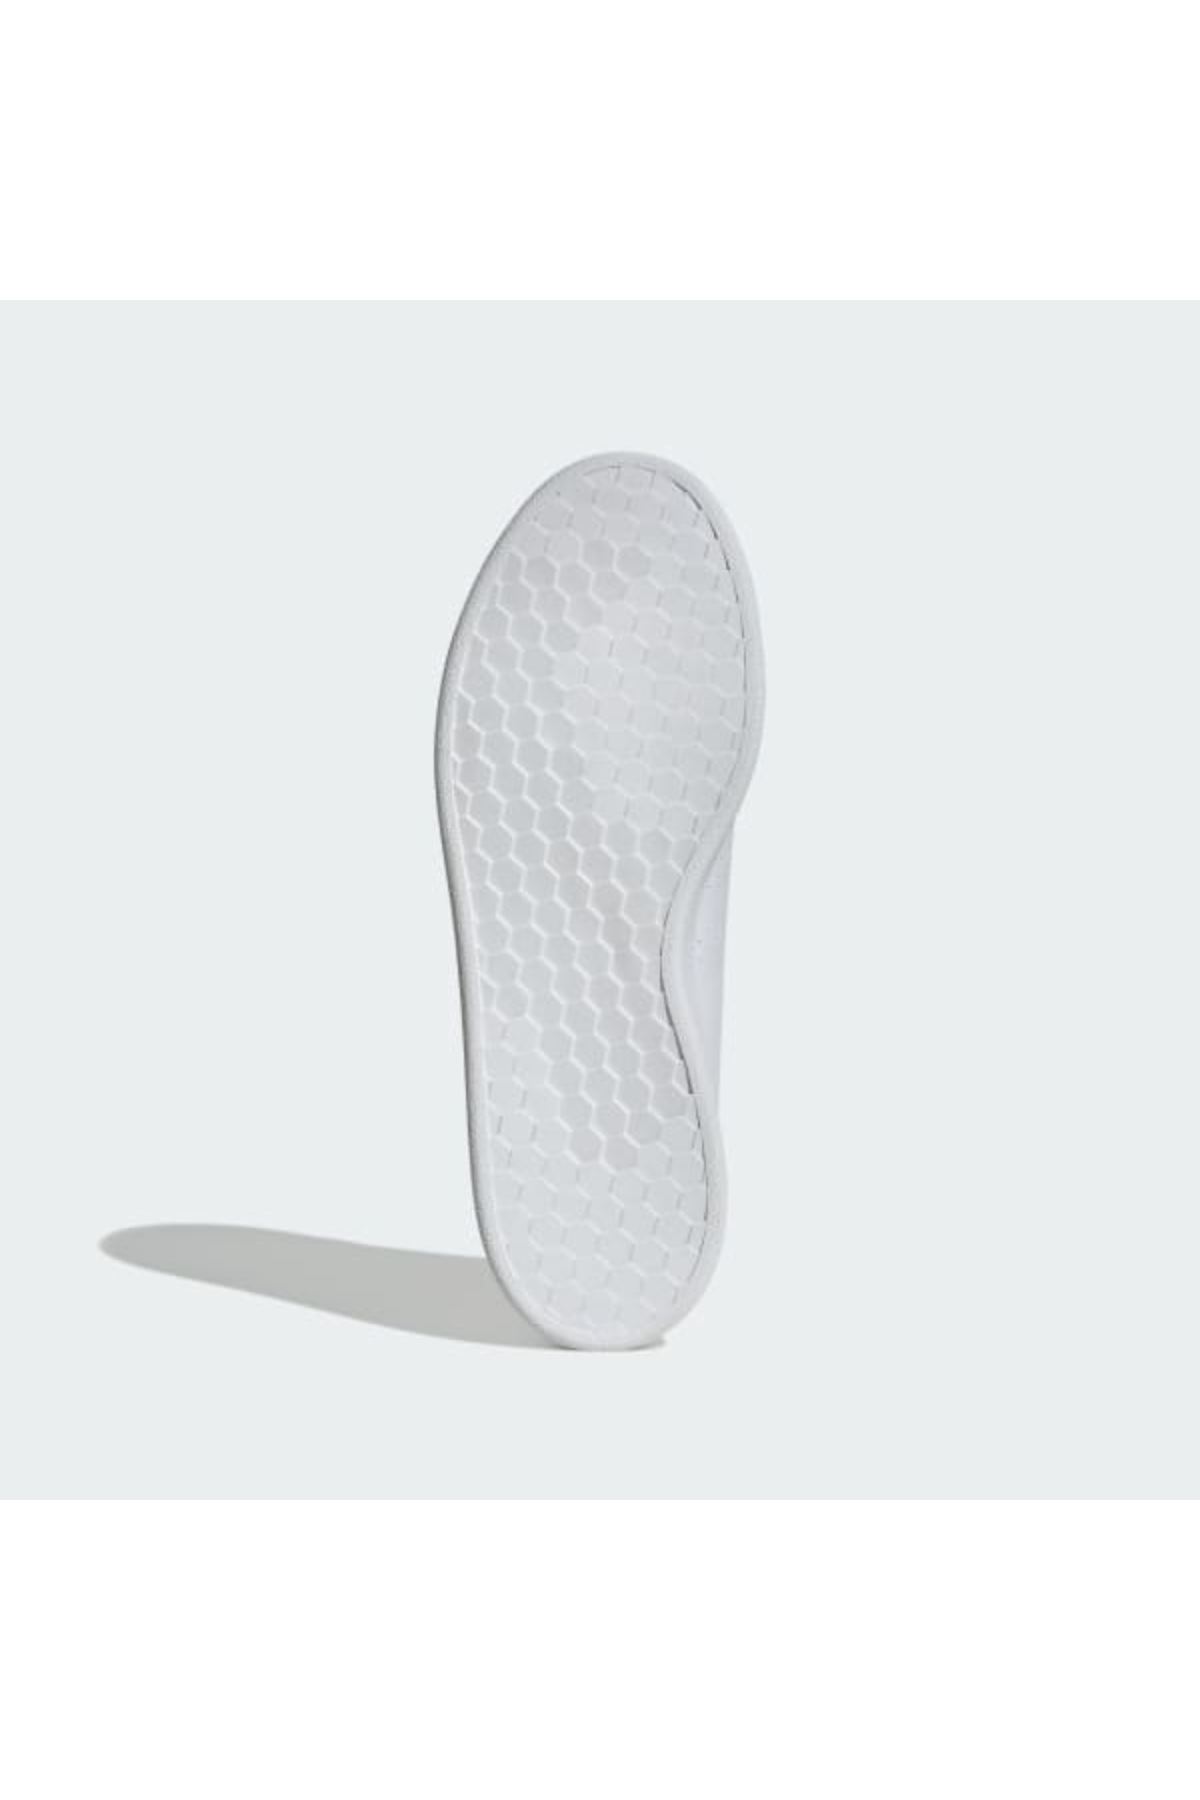 Adidas Advantage Base Erkek Beyaz Spor Ayakkabı - ID9561